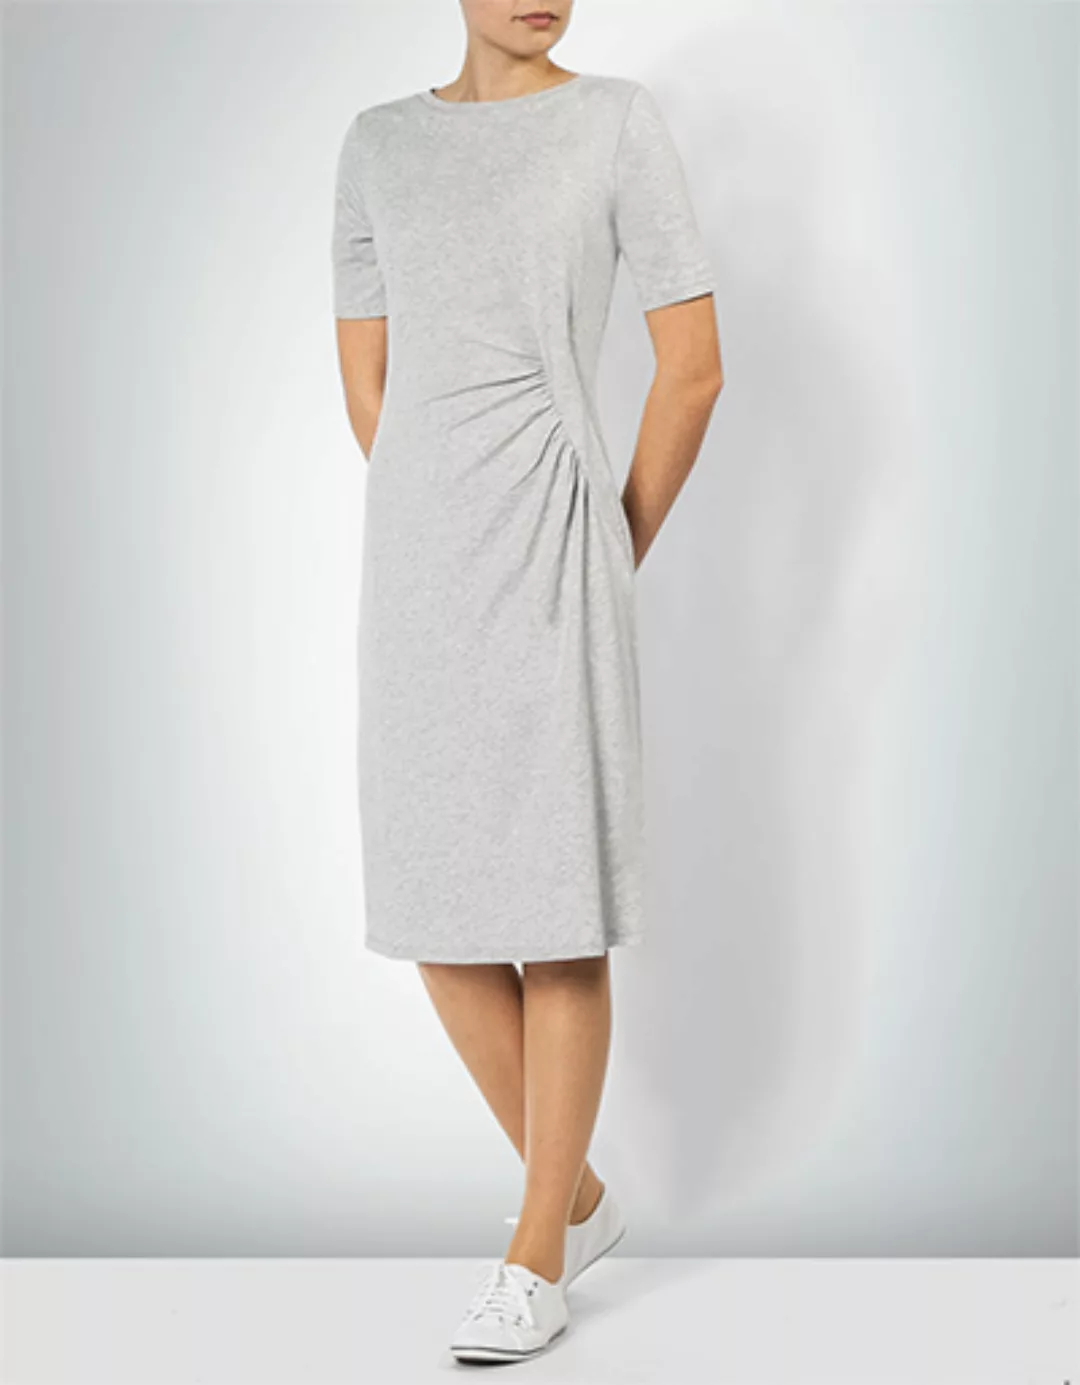 Marc O'Polo Damen Kleid 802 3003 59139/926 günstig online kaufen